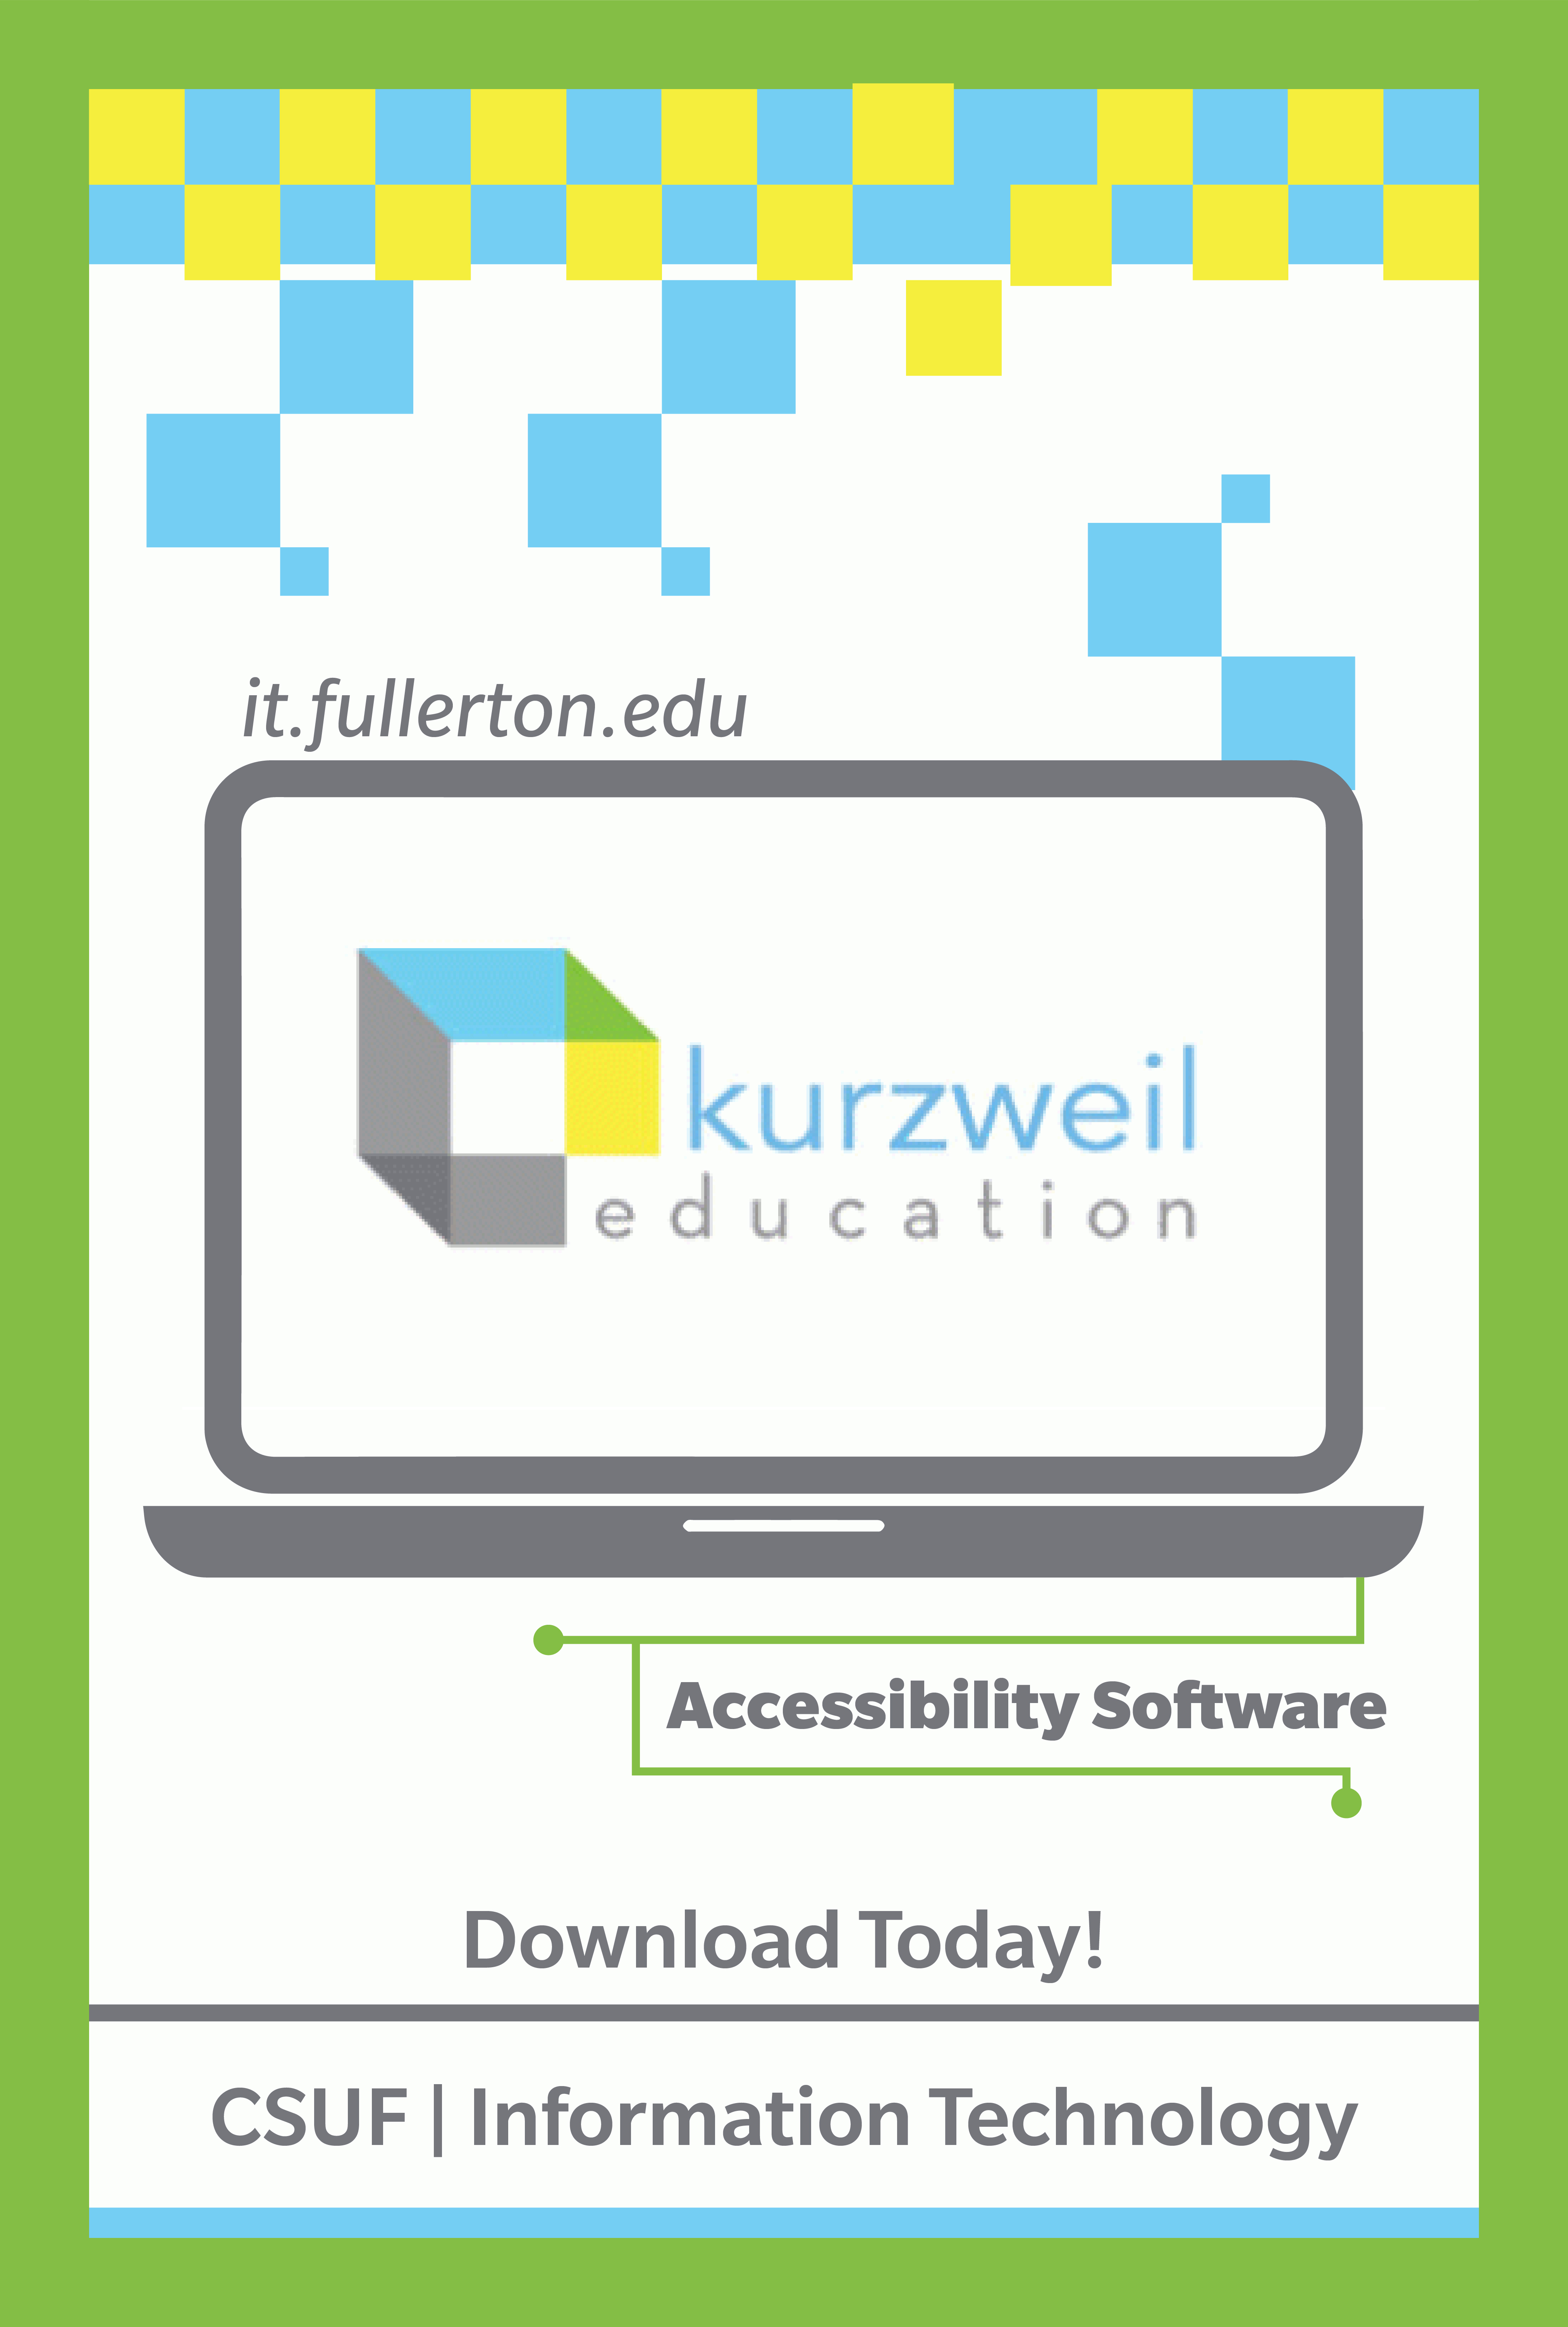 Student Services: Kurzweil